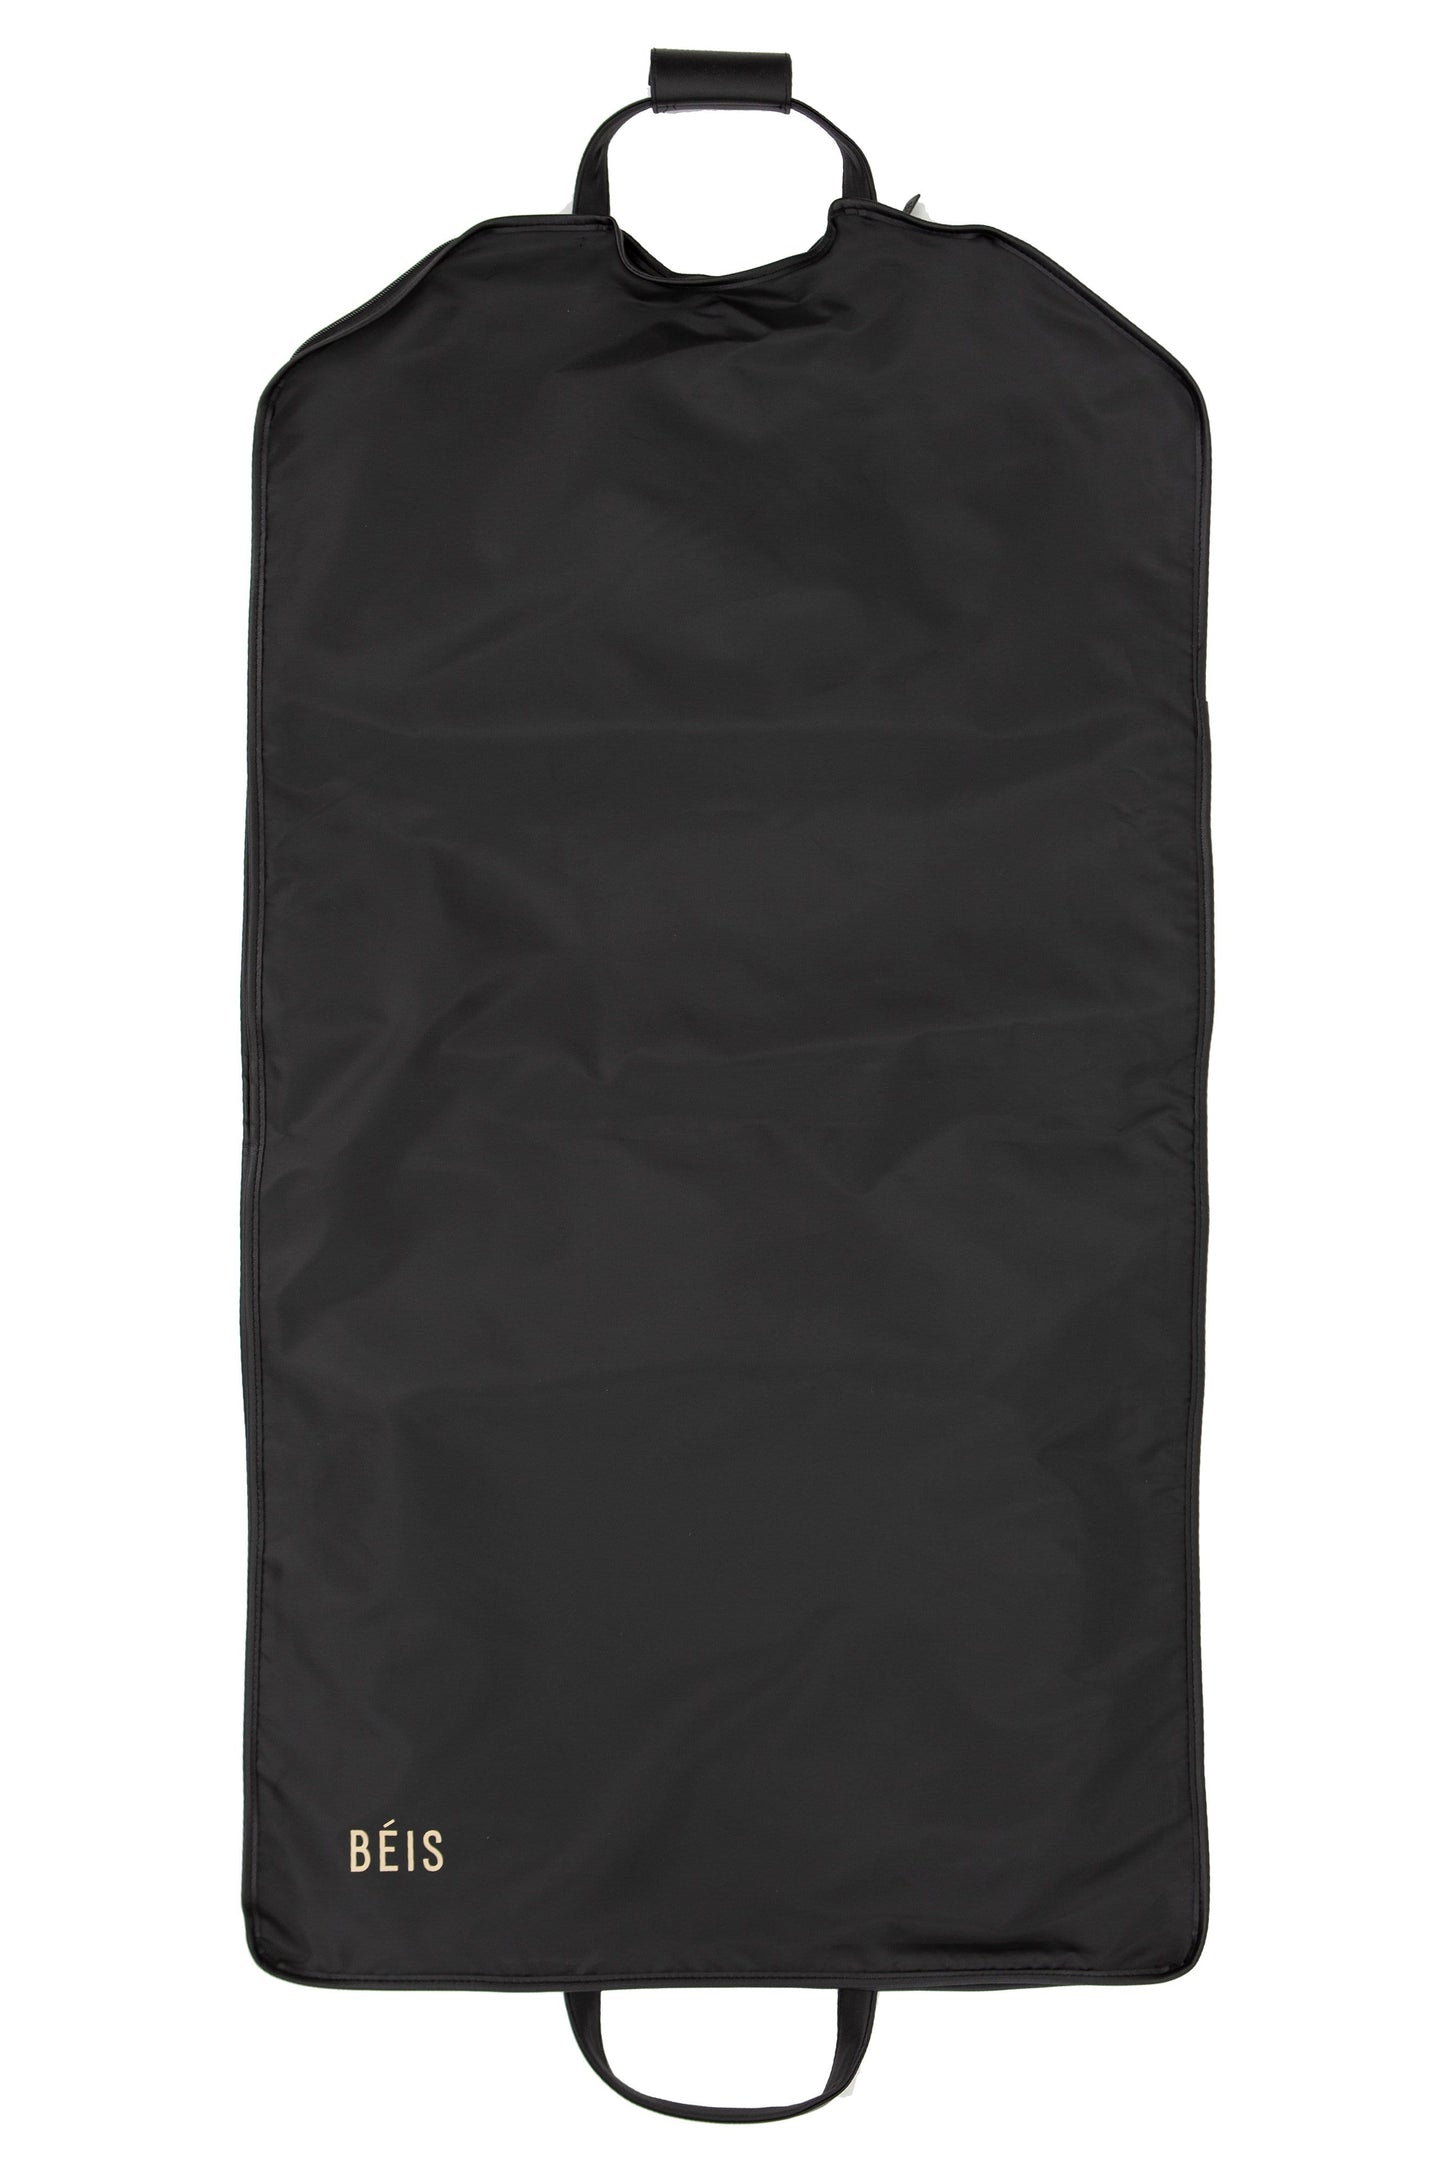 Travel Garment Bag Black Back Expanded